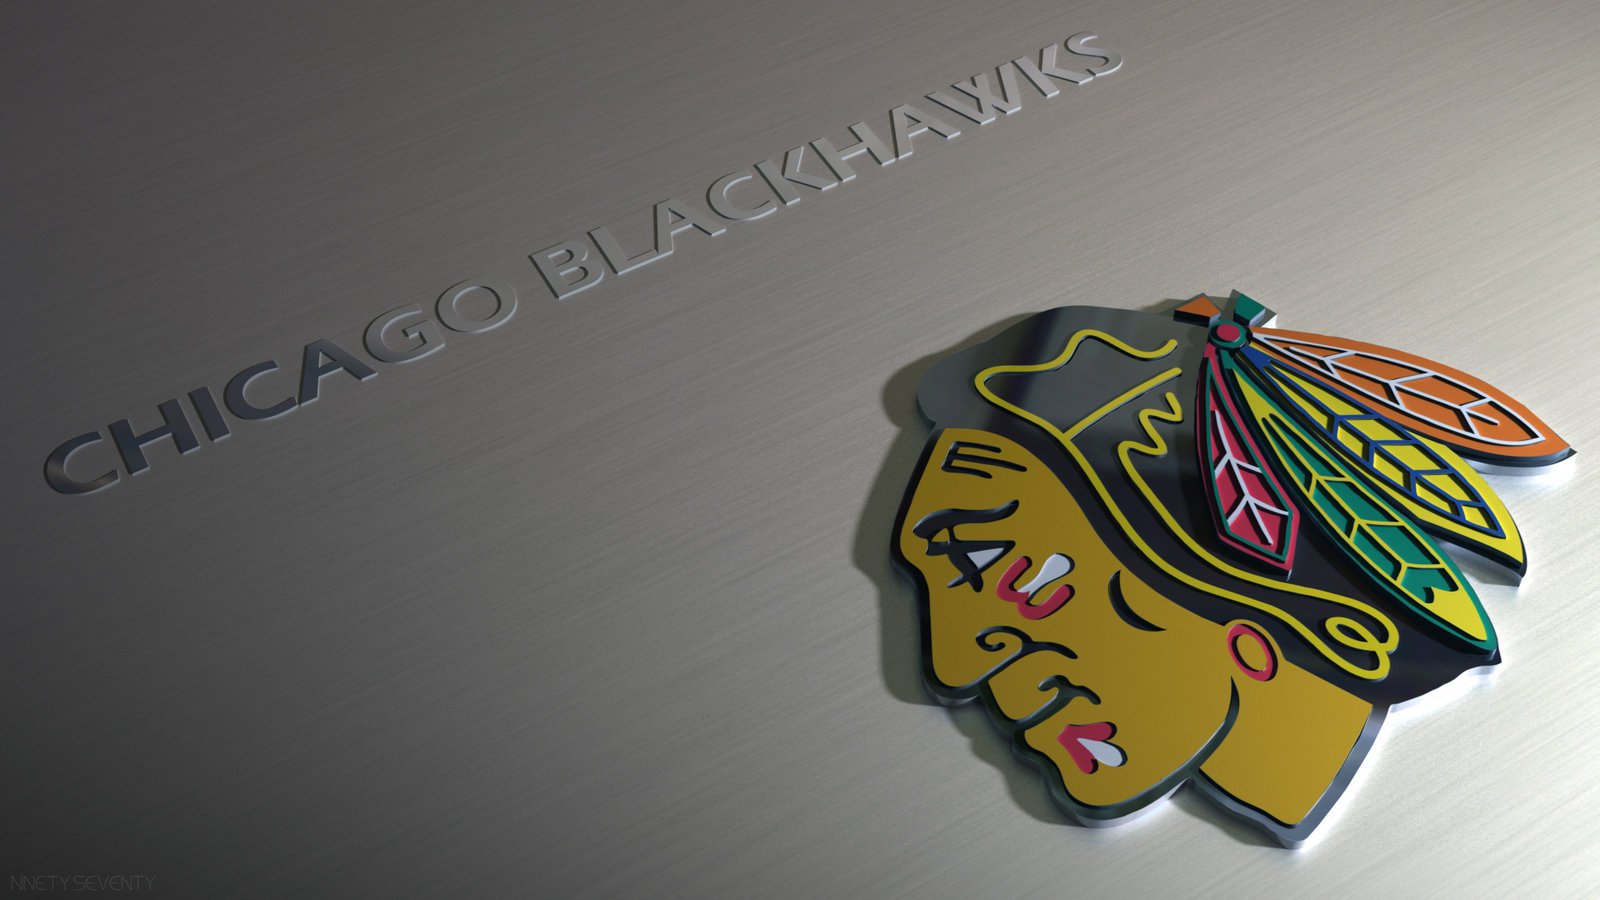 BLMT00174  Chicago blackhawks wallpaper, Chicago blackhawks hockey, Chicago  blackhawks logo